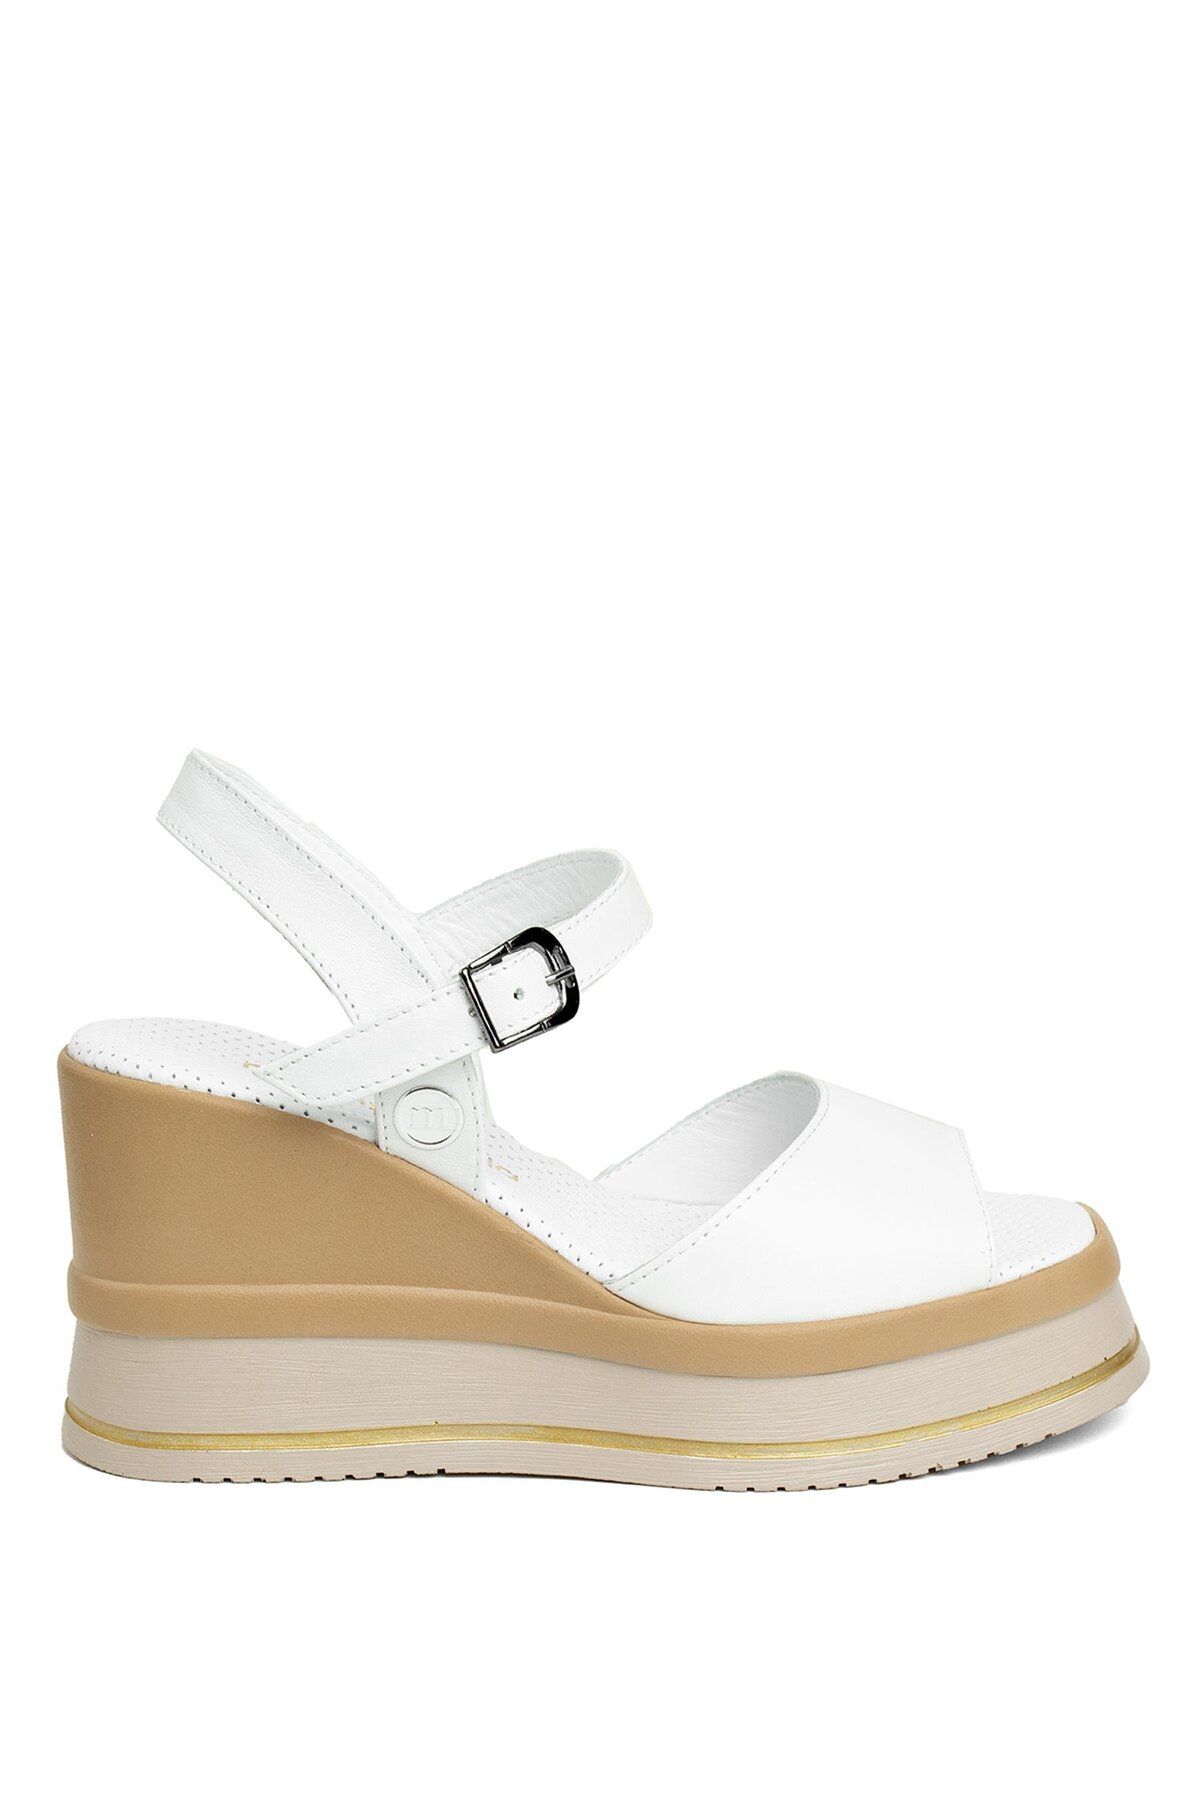 Mammamia D24YS-1495 Kadın Dolgu Topuk Sandalet Beyaz